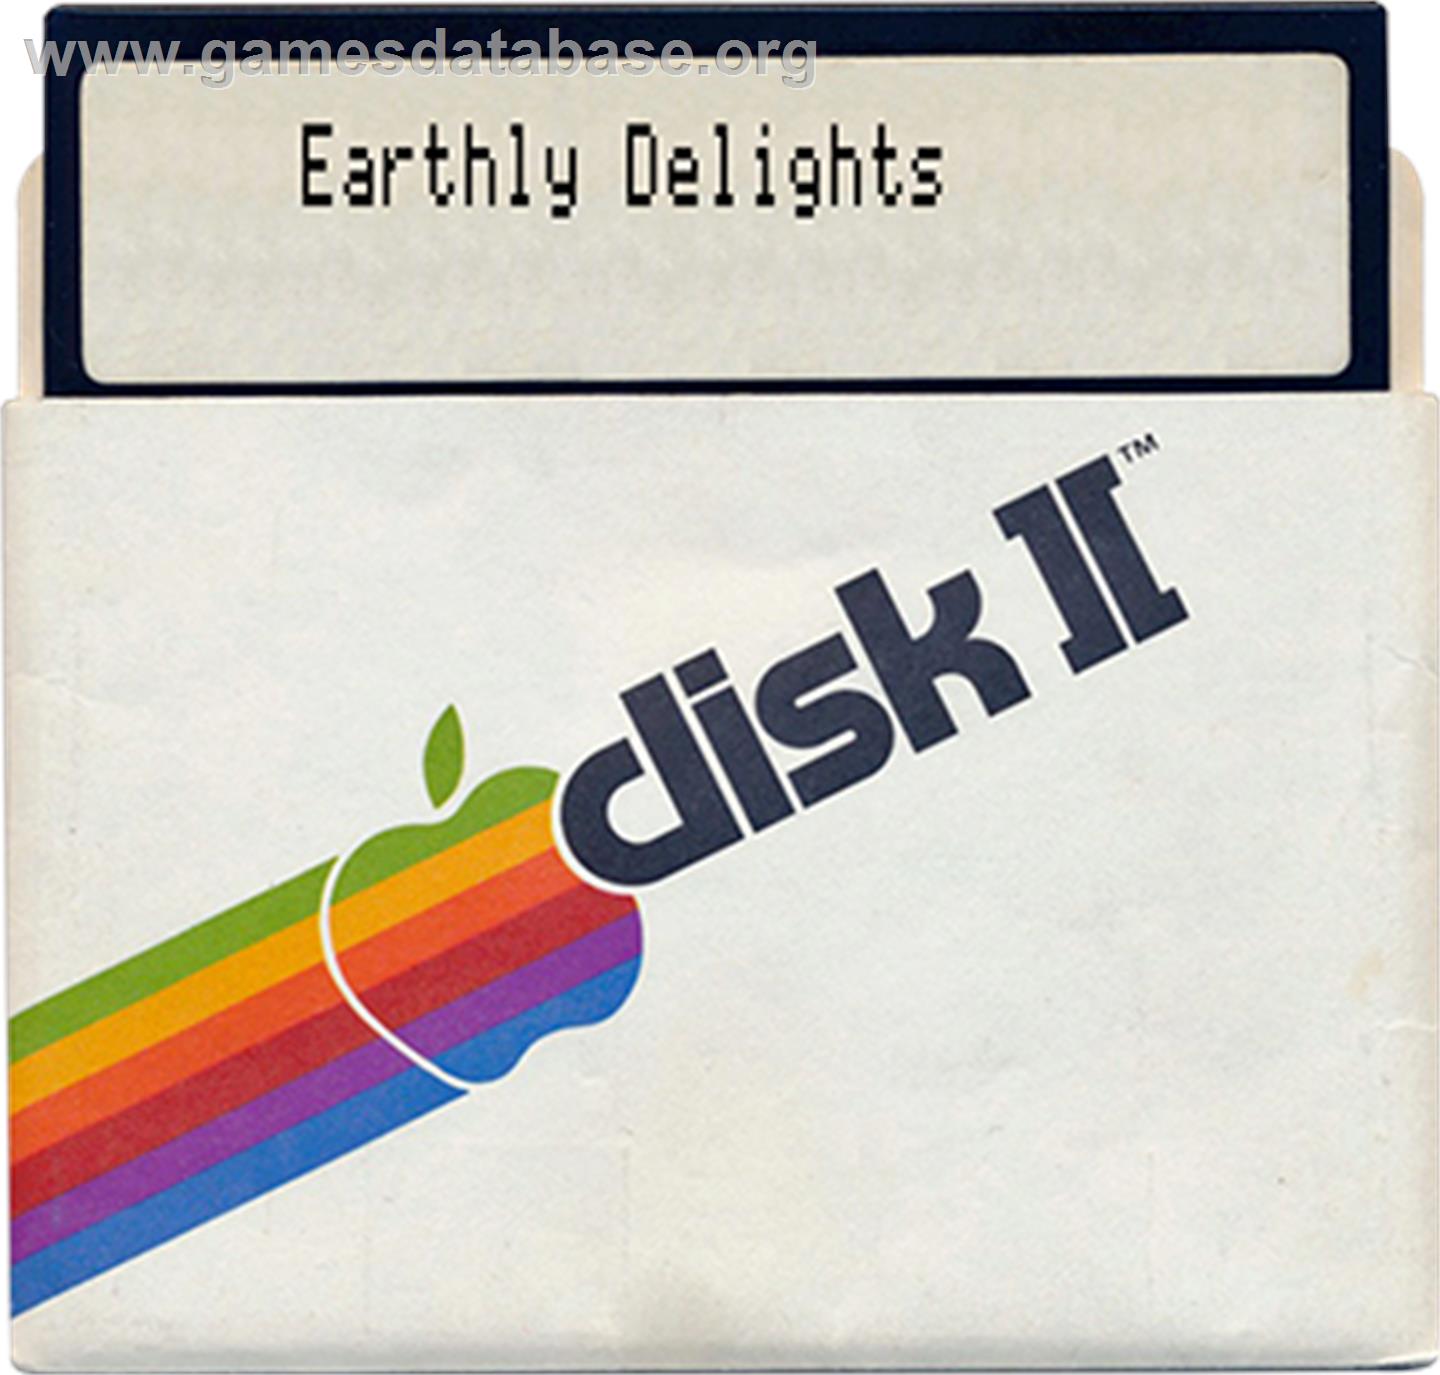 Earthly Delights - Apple II - Artwork - Disc